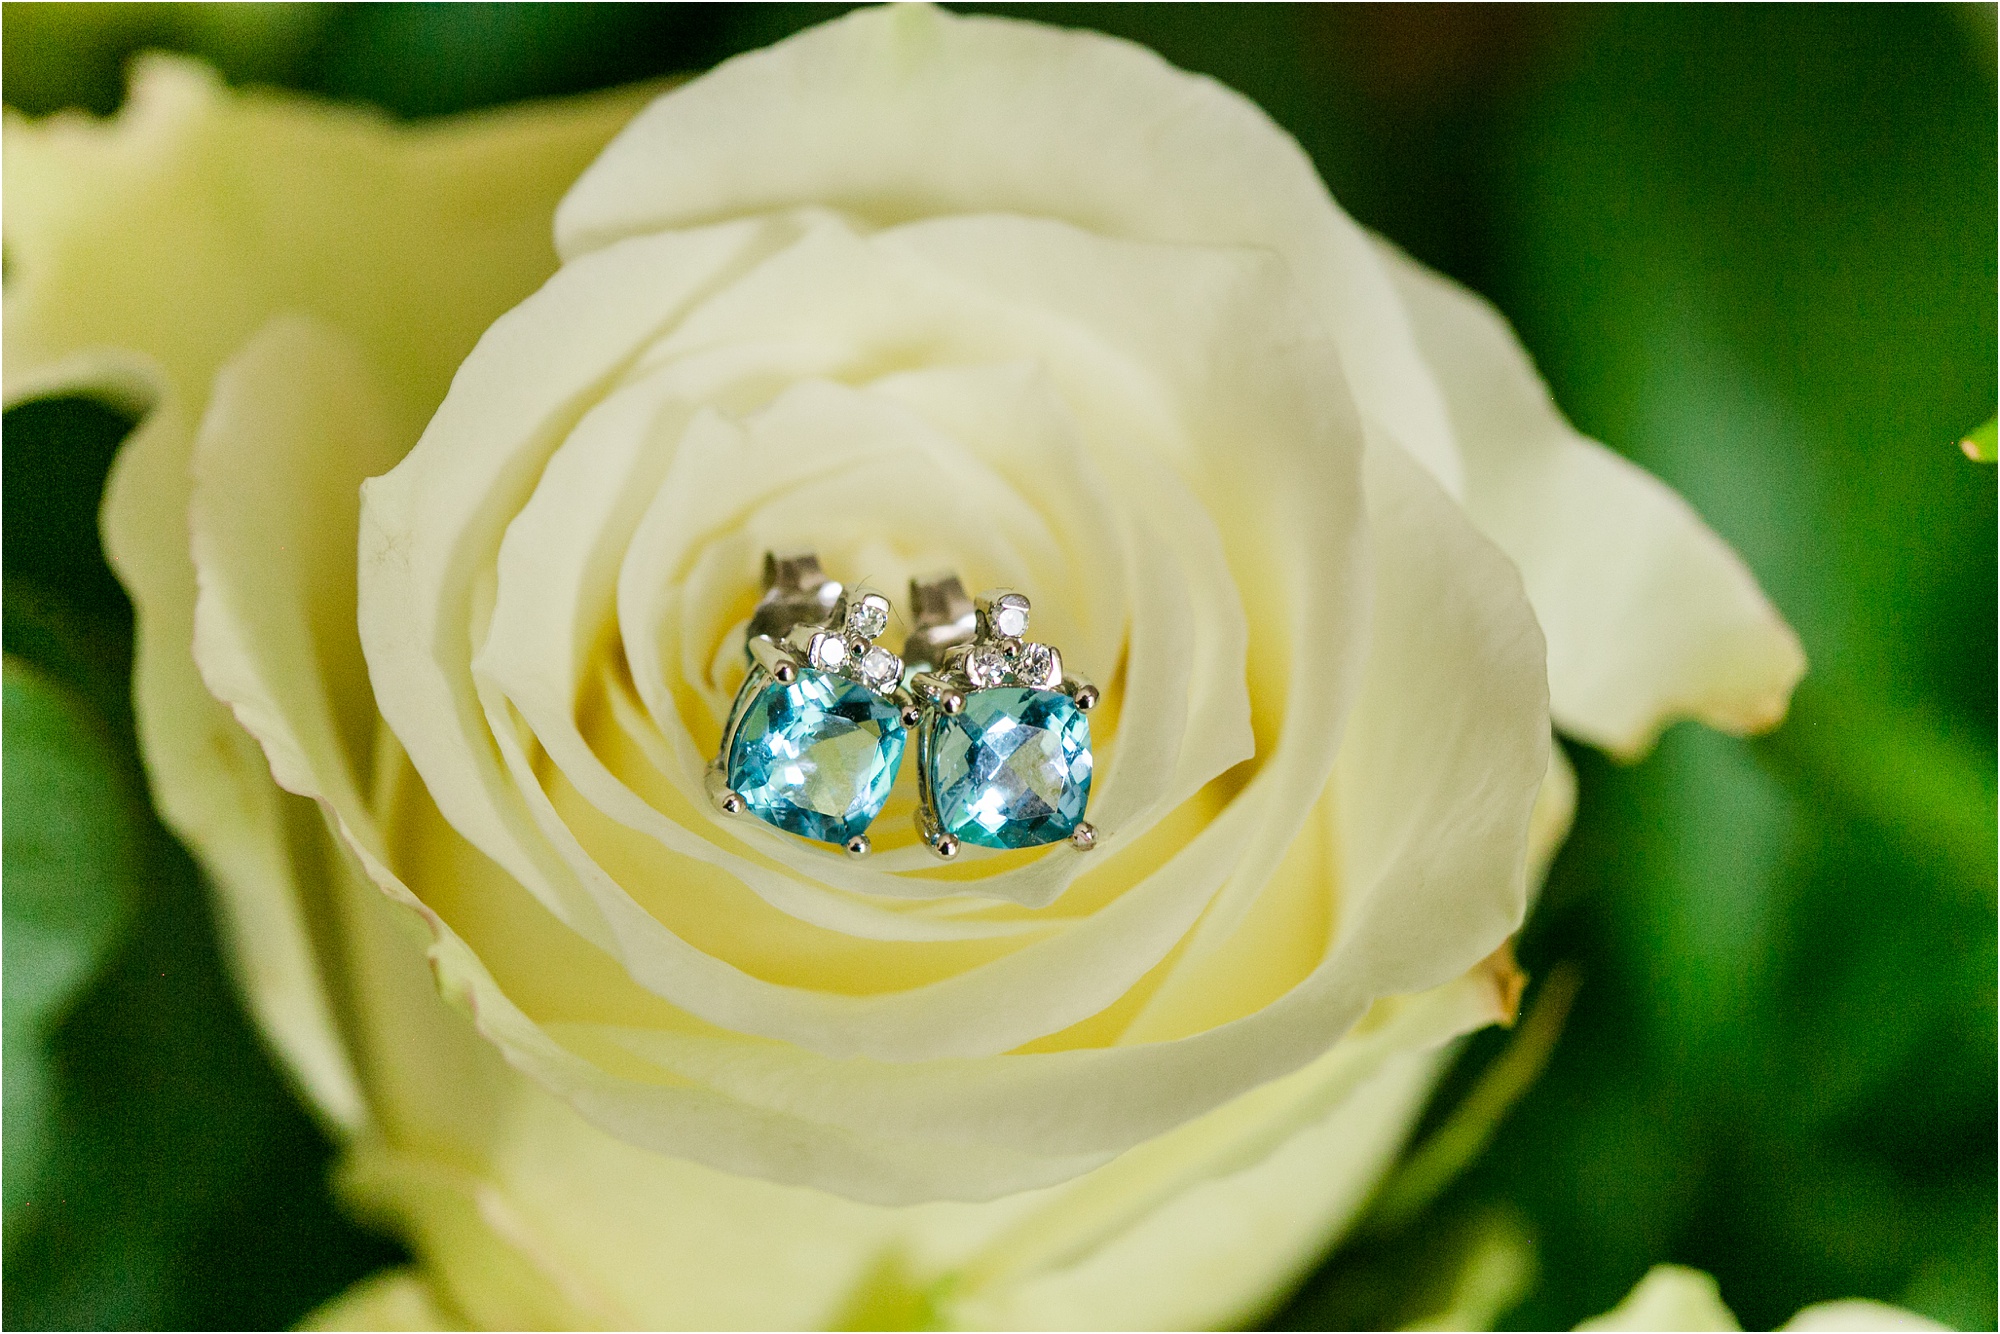 aquamarine earrings on ivory rose macon wedding